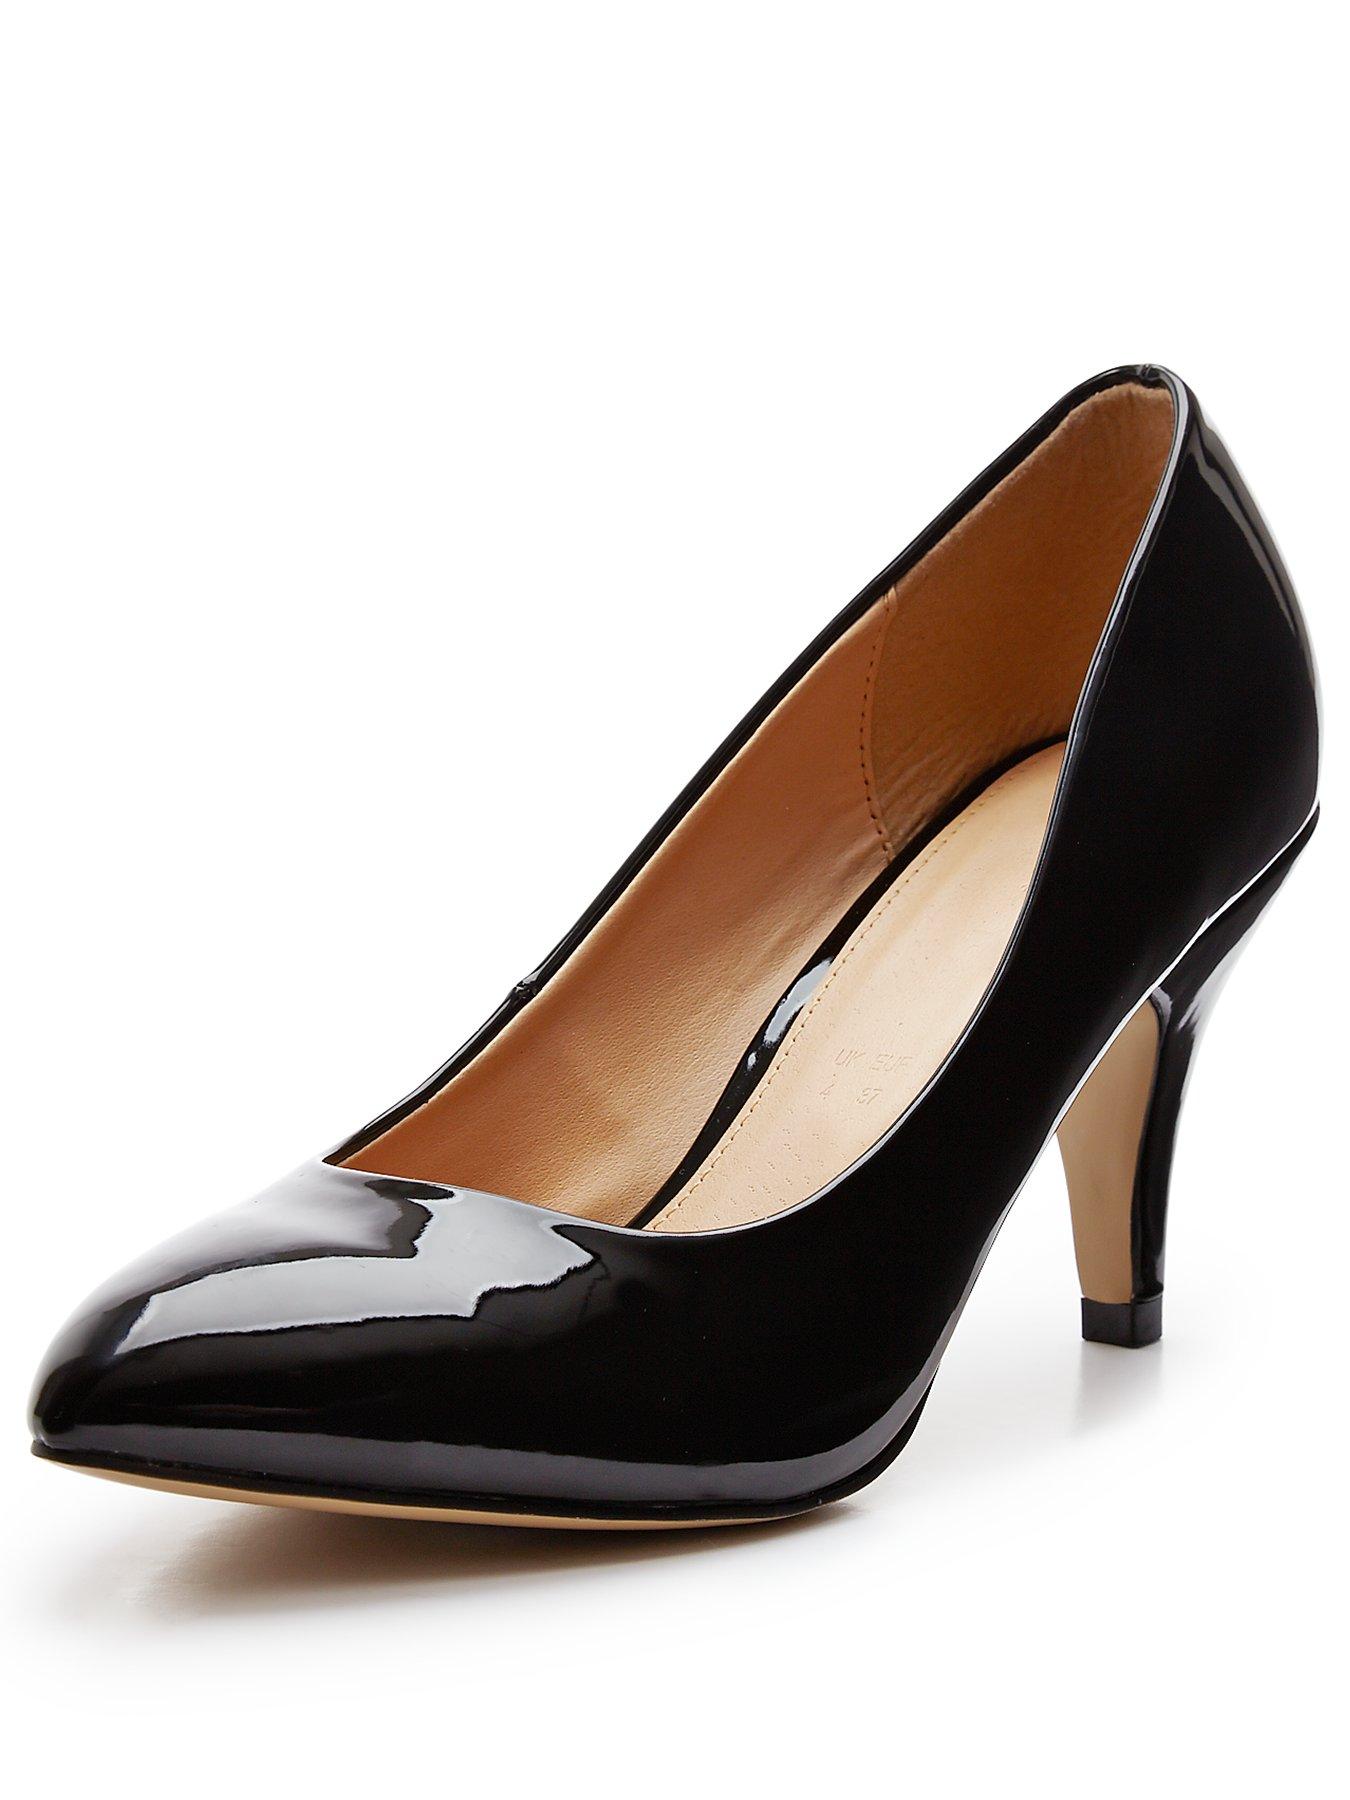 Womens Heels | Ladies Heels | High Heels | Littlewoods.com